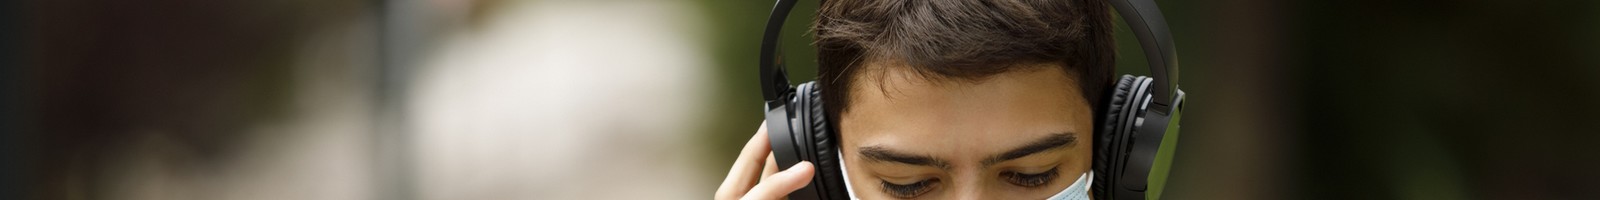 L’usage des casques audios et autres écouteurs devient dangereux pour les jeunes